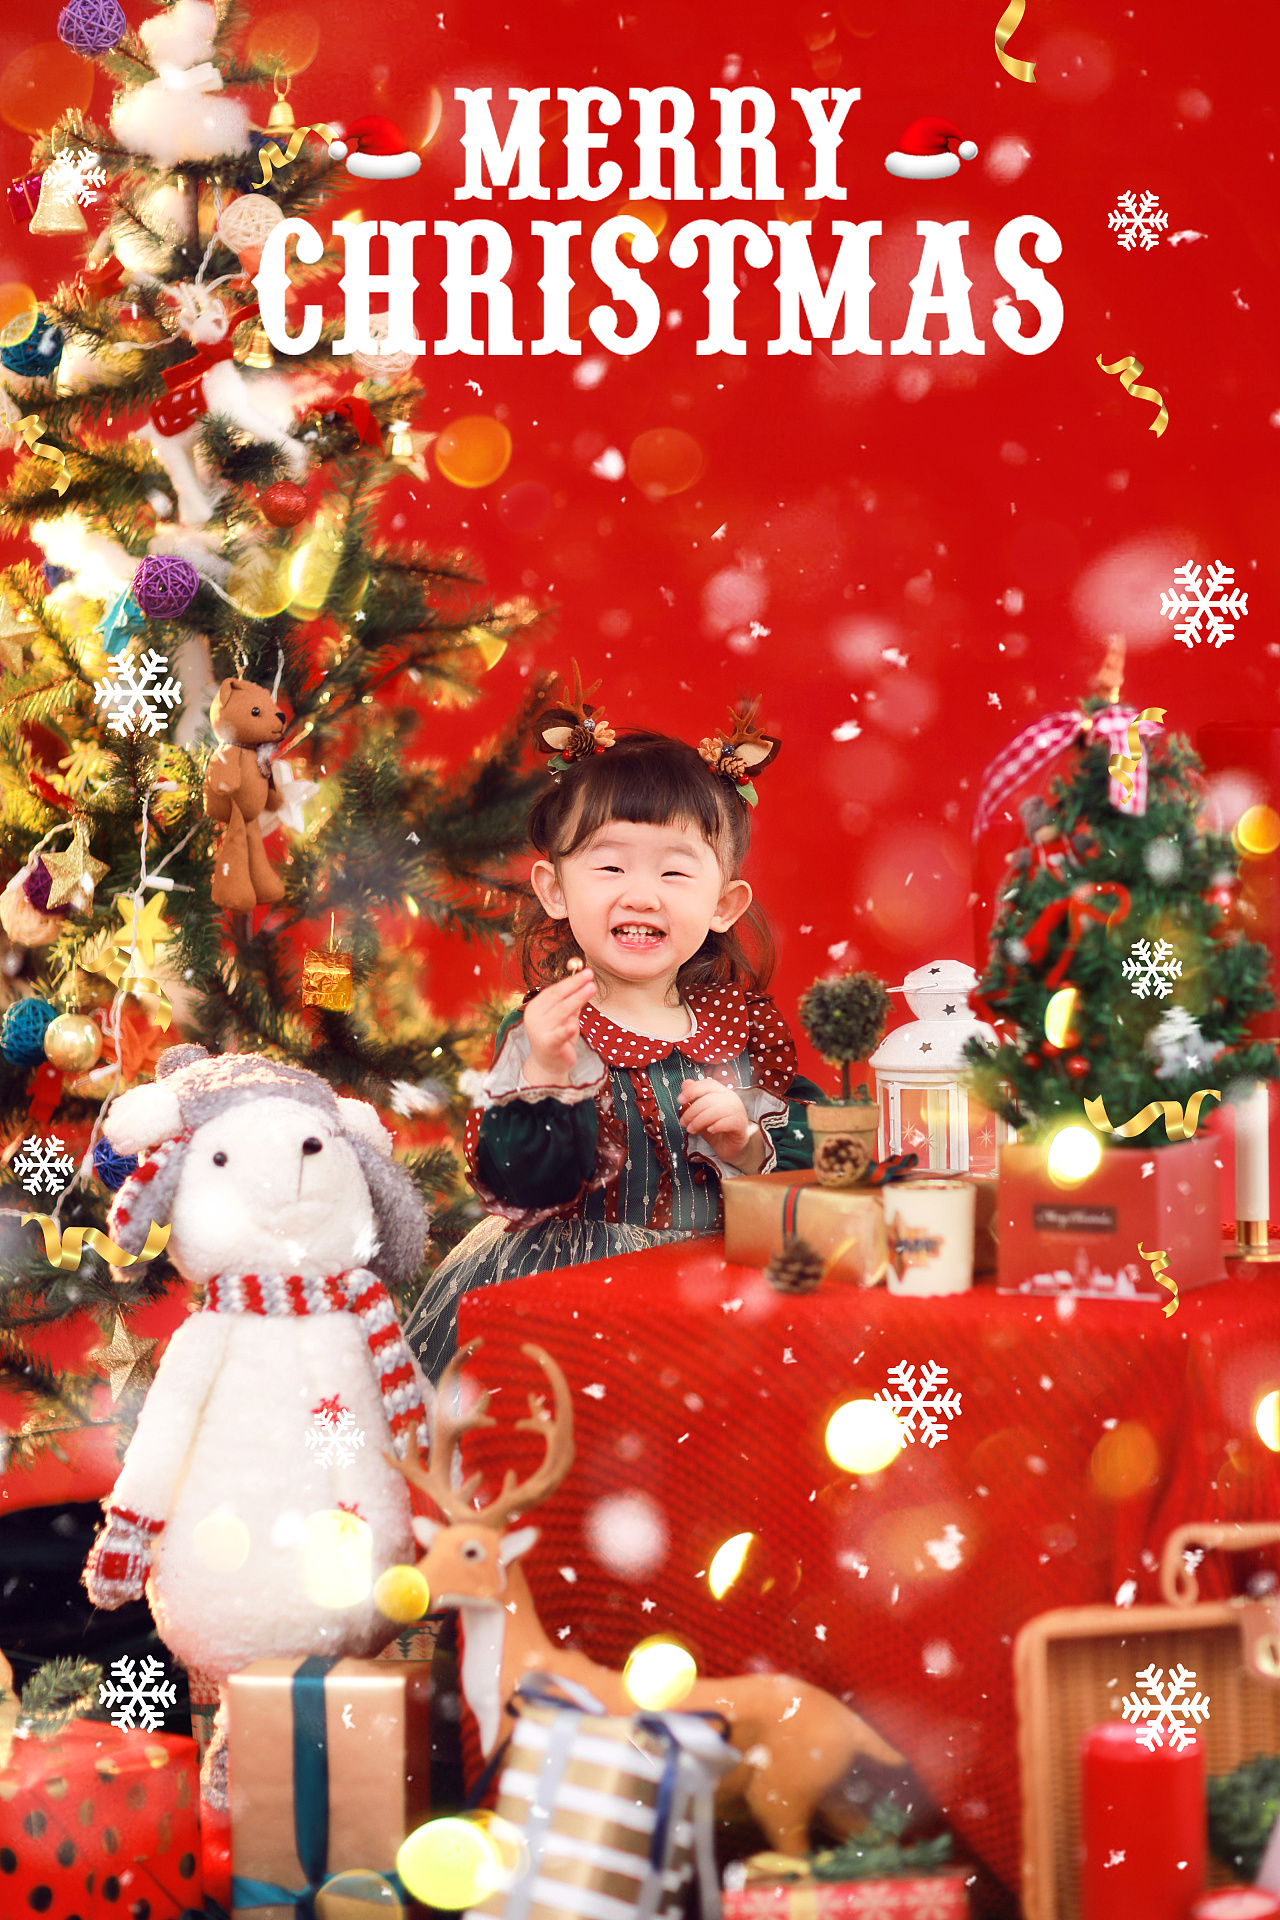 图片素材 : 假日, 儿童, 宝宝, 圣诞树, 圣诞装饰, 圣诞节的时候, 圣诞老人, 小男孩, 圣诞精灵 3066x2044 ...